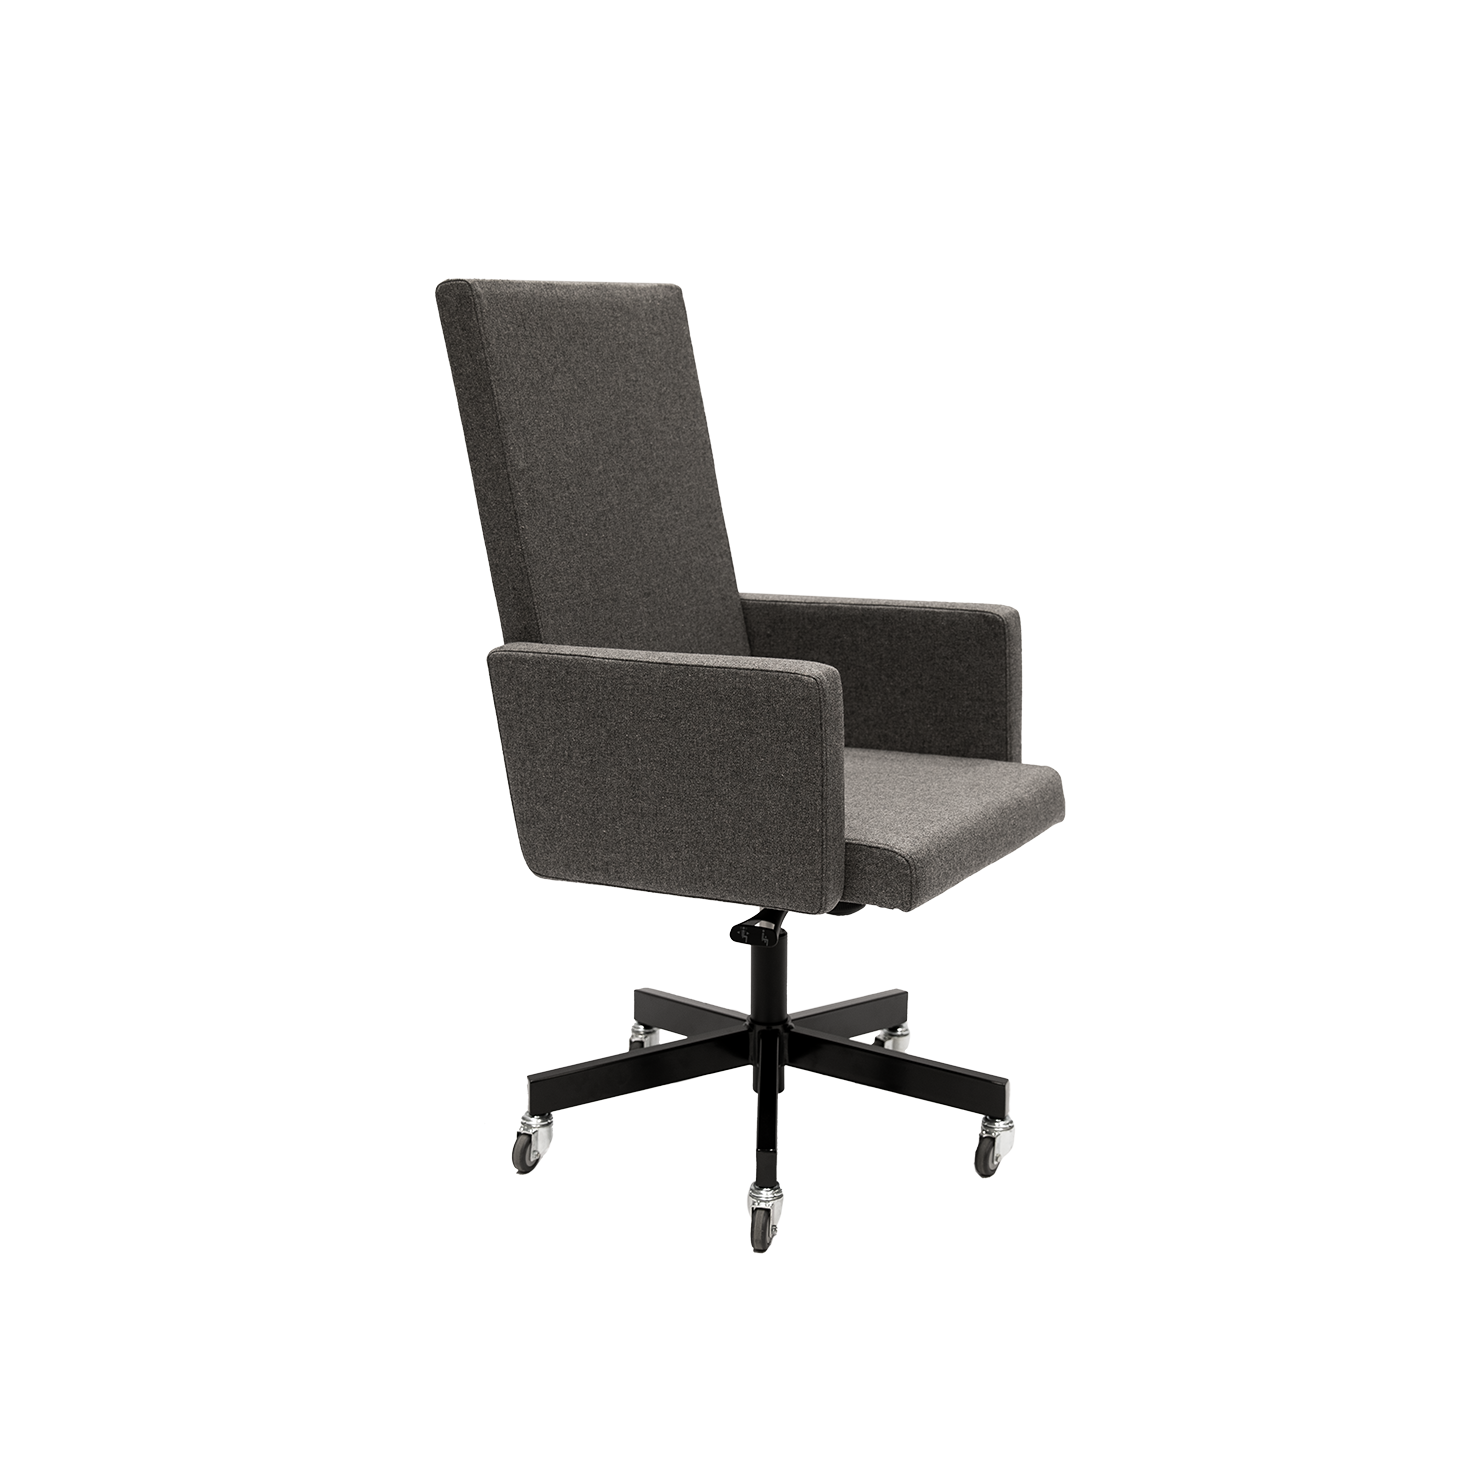 AVL Chair